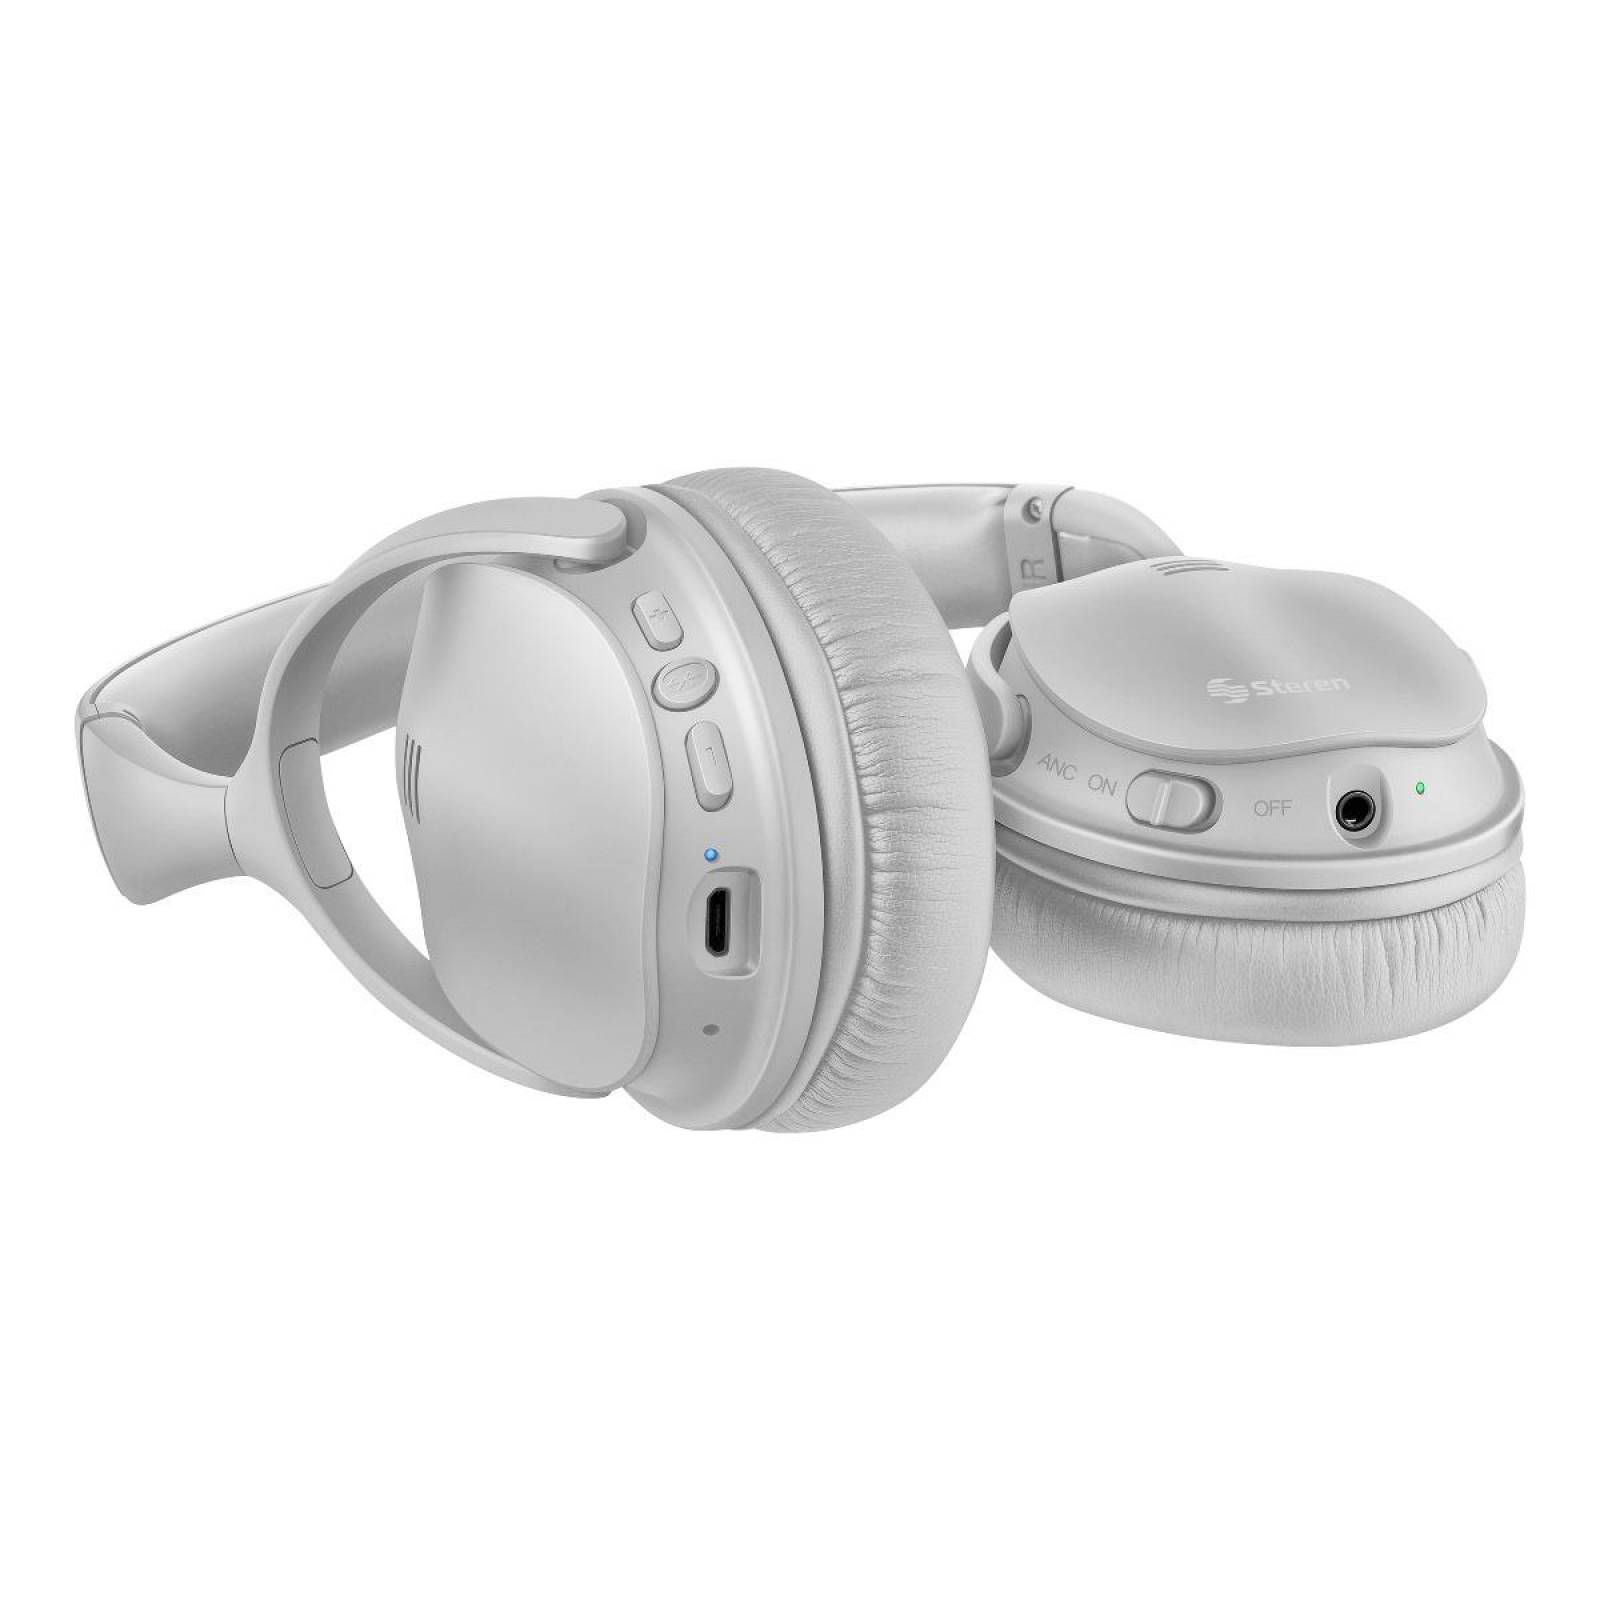 Audífonos inalámbricos SONY LinkBuds S con cancelación de ruido - Crema